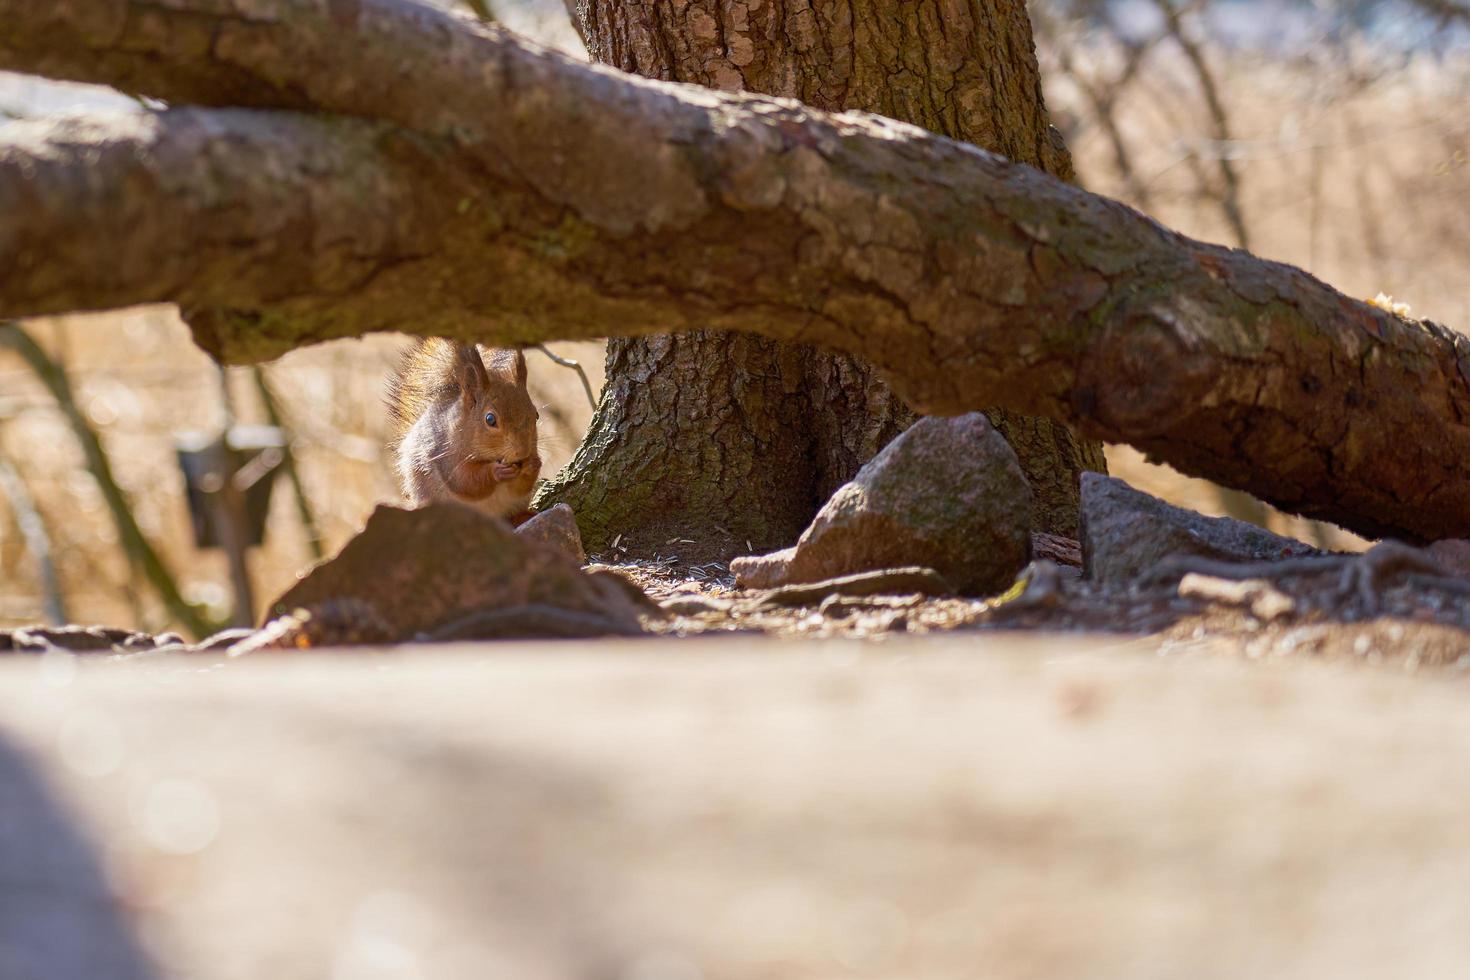 ardilla comiendo una nuez debajo de la rama de un árbol foto